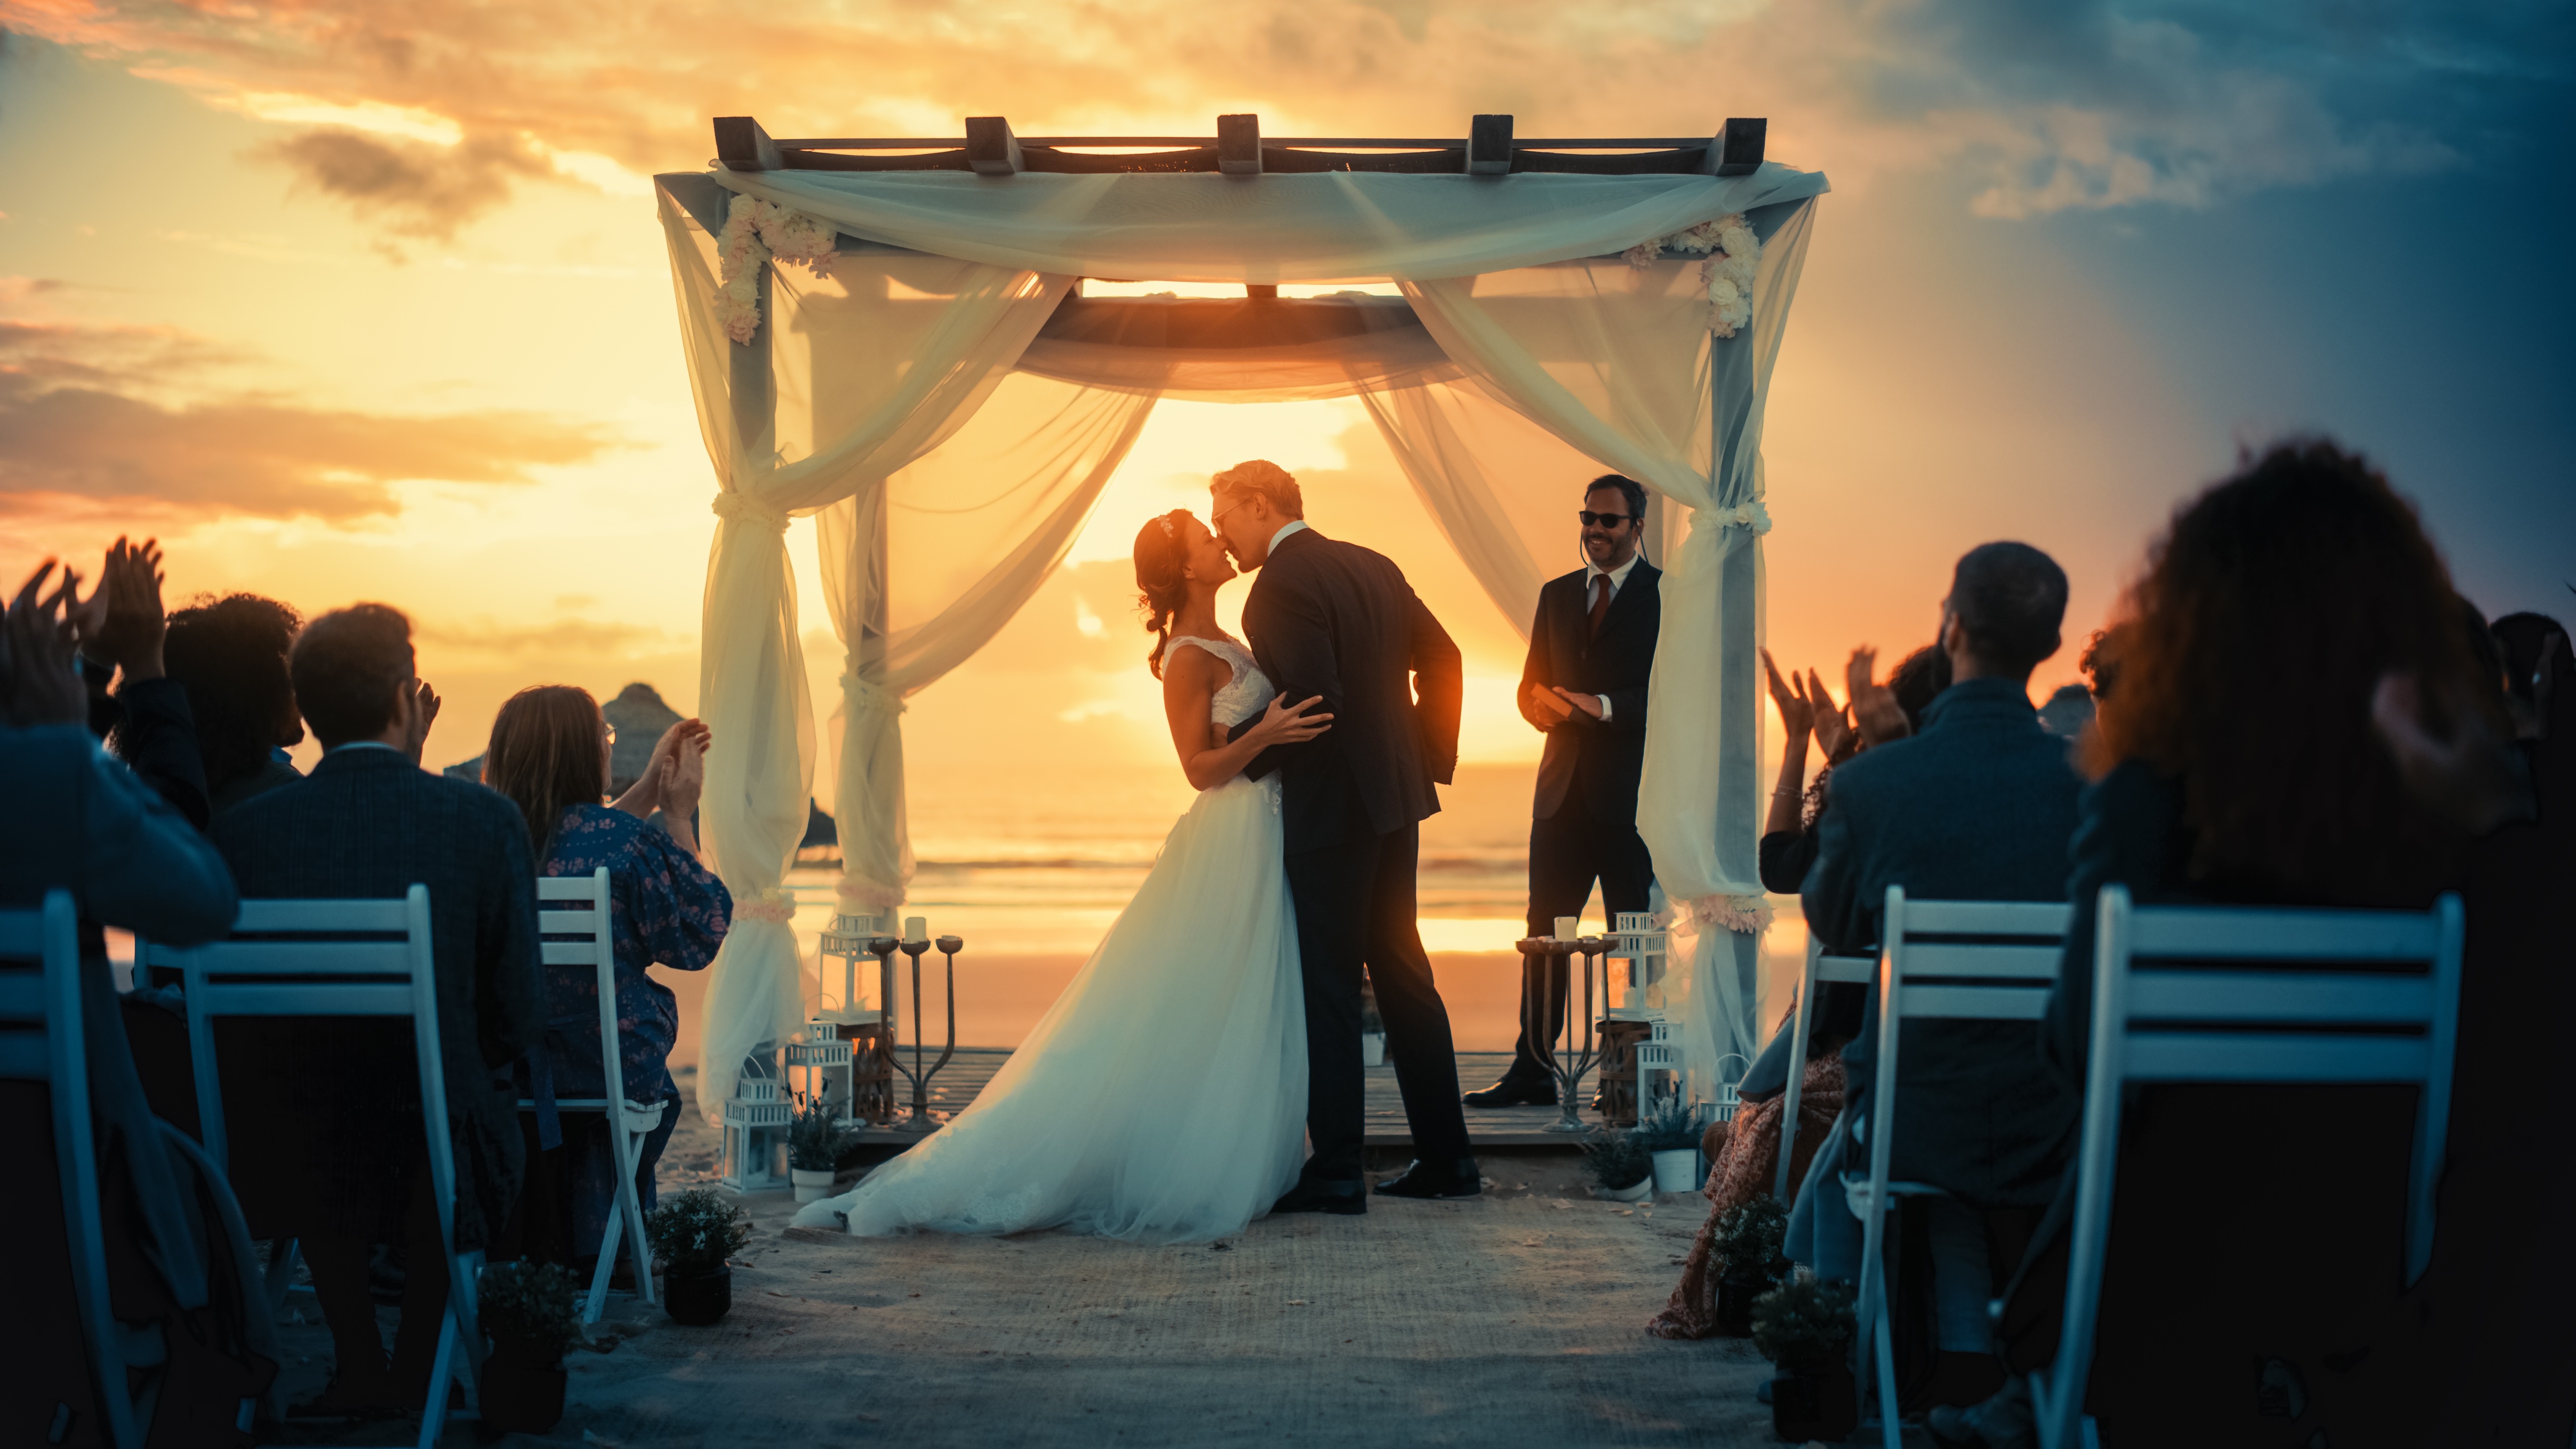 Braut und Bräutigam küssen sich bei ihrer Hochzeit | Quelle: Shutterstock